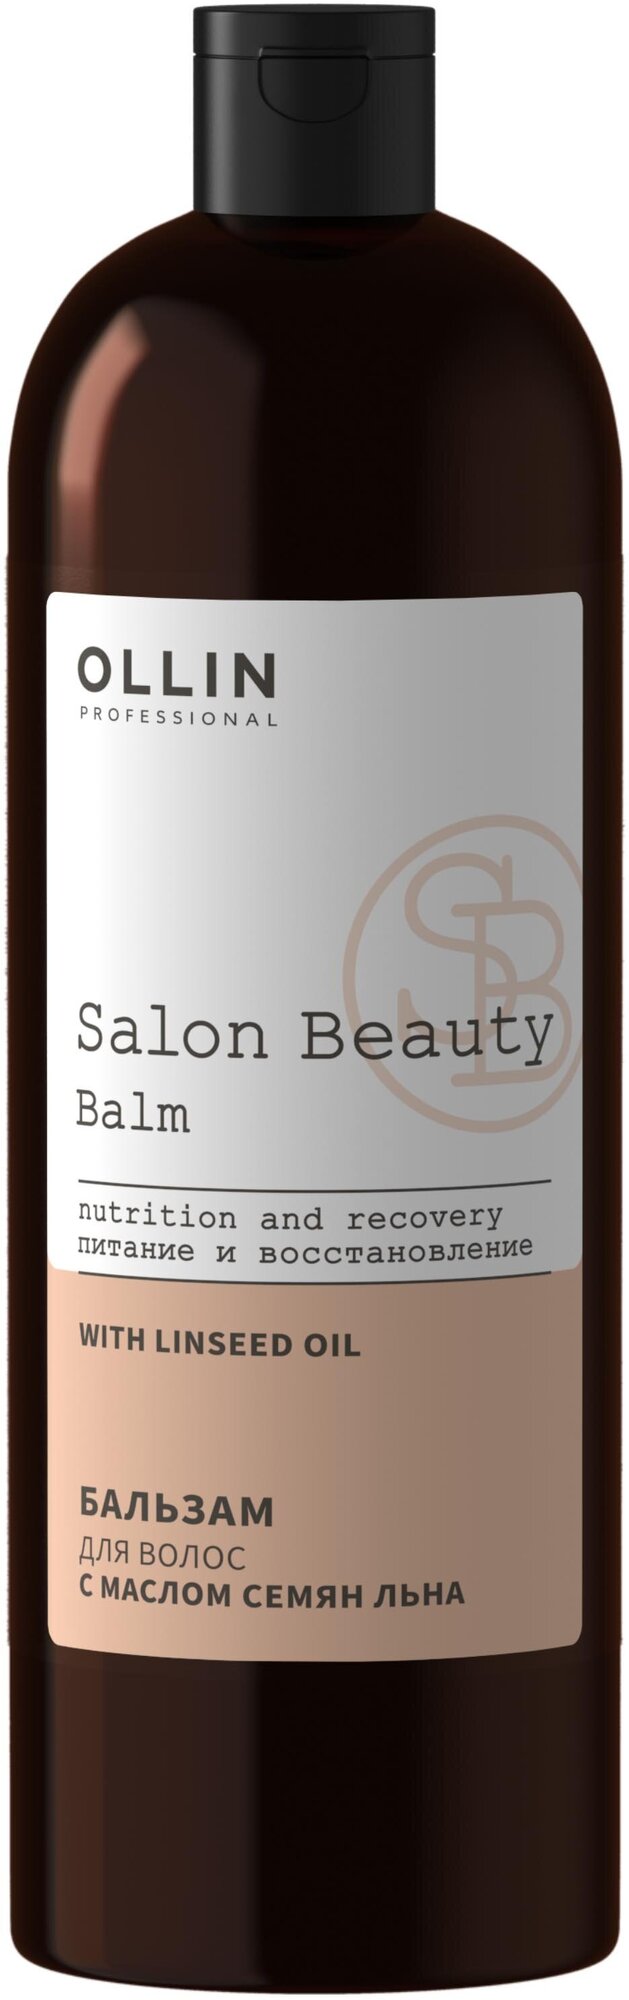 Бальзам для волос с маслом семян льна Ollin Professional Salon Beauty (1000 мл)